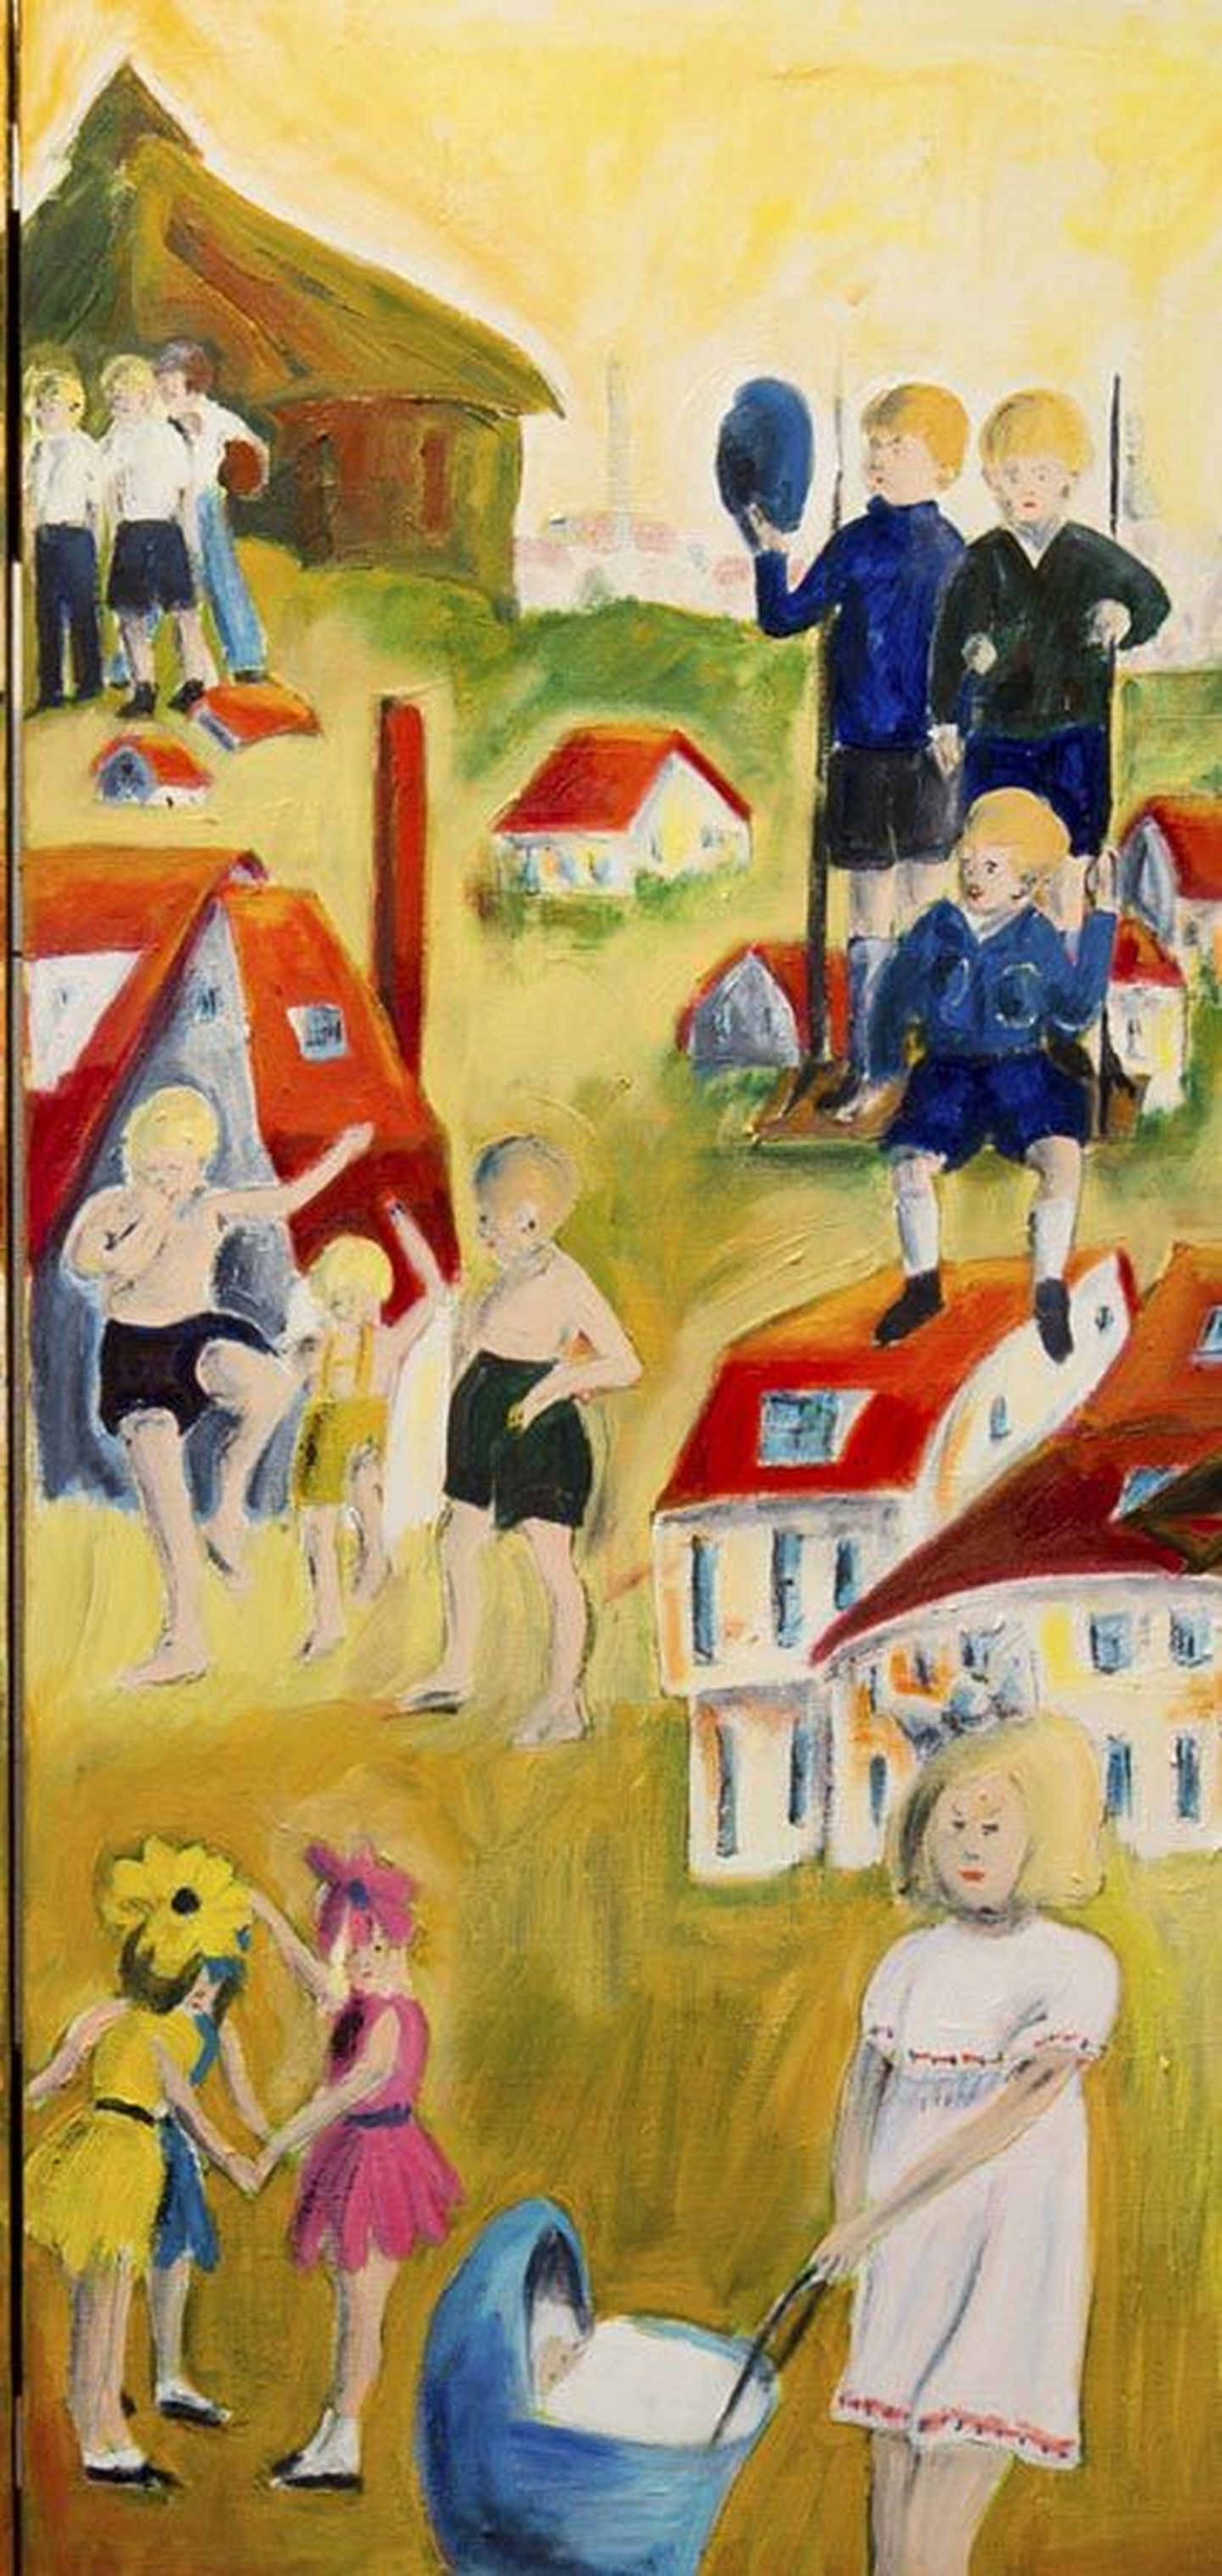 Seitsmekümneaastane arst Mai Maddisson on oma varased lapsepõlvemälestused Geislingeni põgenikelaagrist elustanud tegelasterohkes värviküllases maalis. Nagu sellel fragmendilgi näha, pole vahet milline maailm lapsi ümbritseb – nemad mängivad ikka oma mänge.